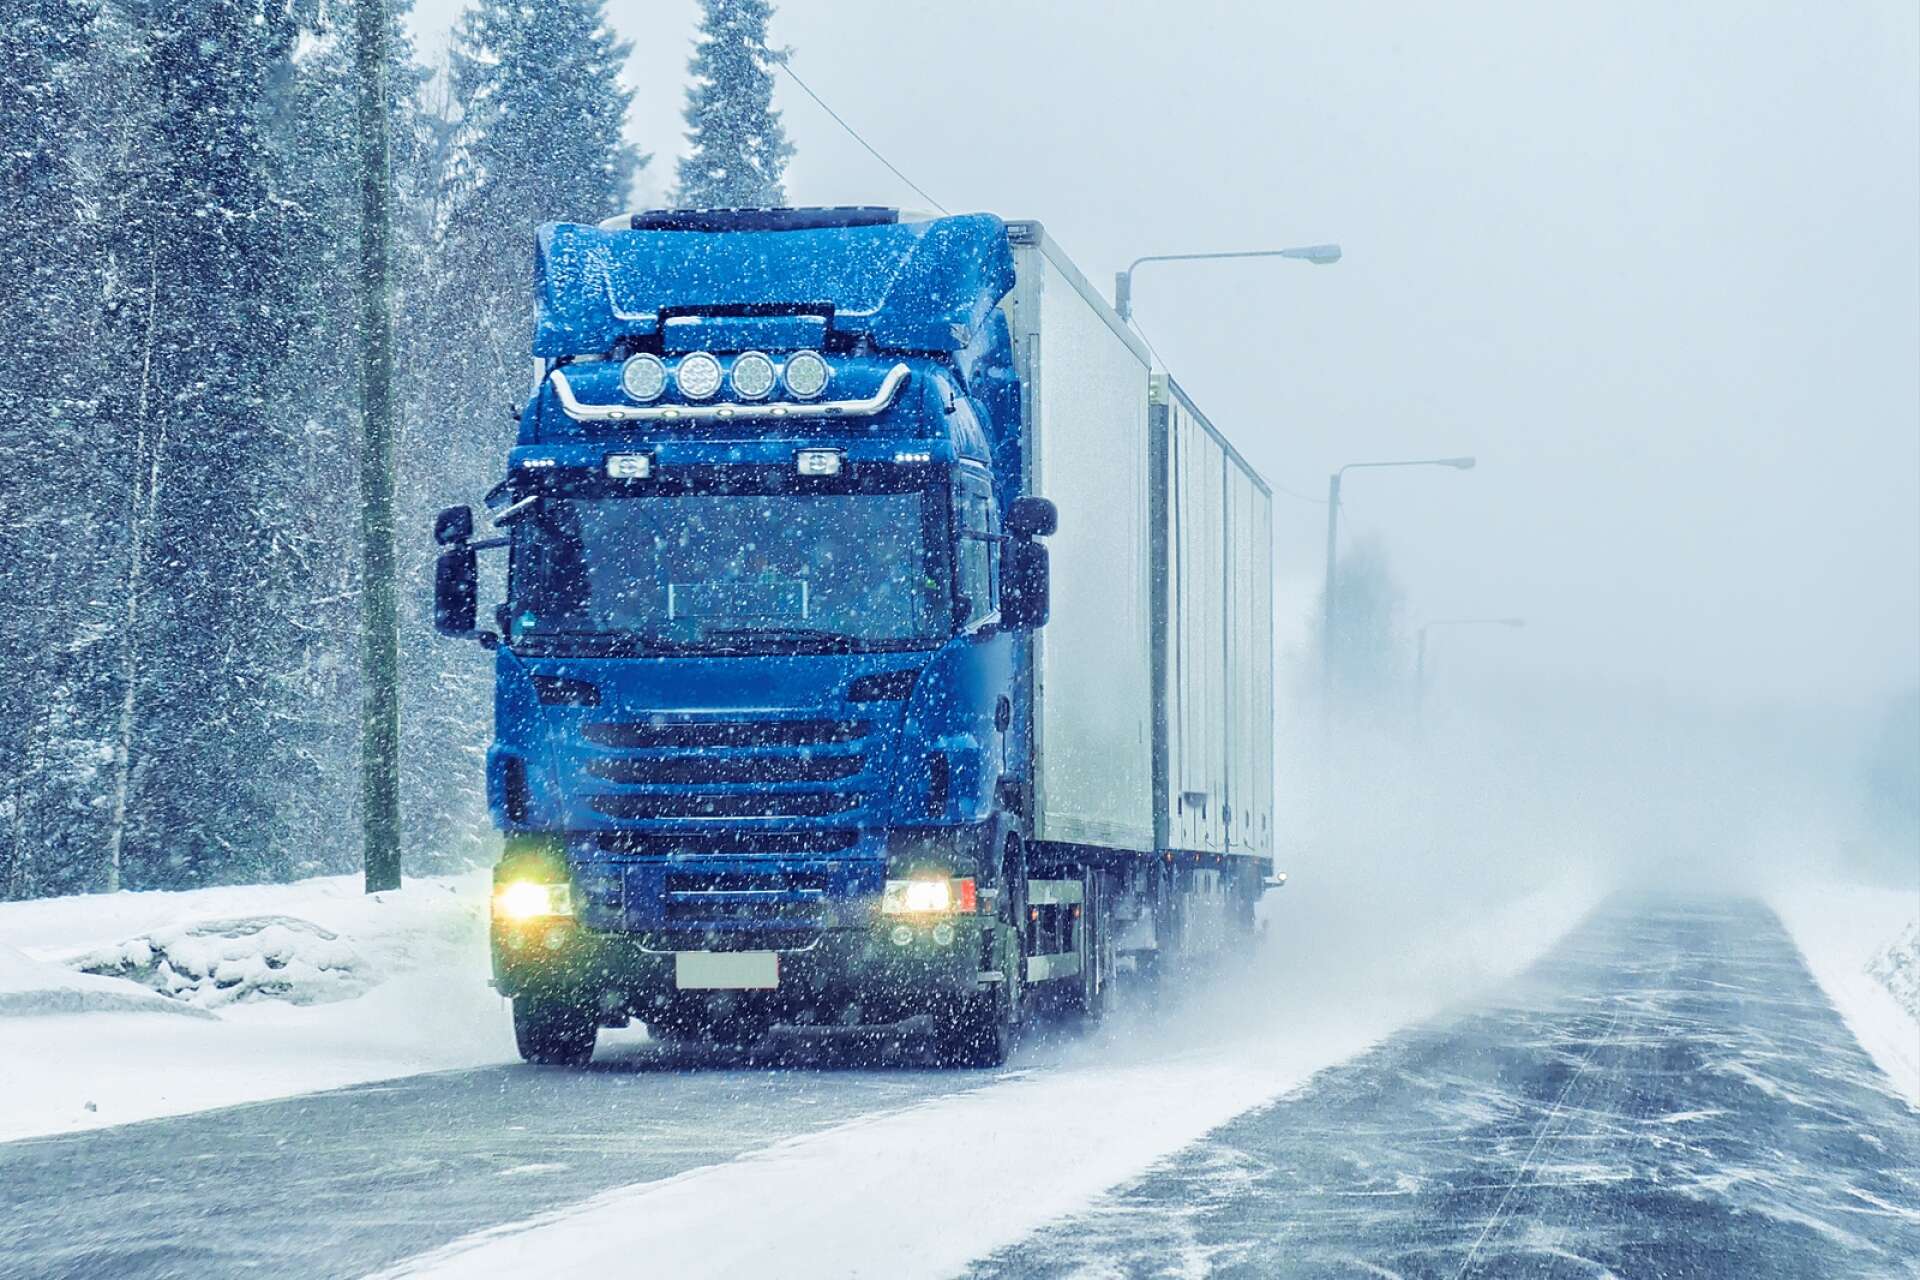 Hela 98 procent av lastbilarna uppfyller kraven på vinterdäck. Det visar polisen och Transportstyrelsen undersökningar som genomförs vart tredje år.